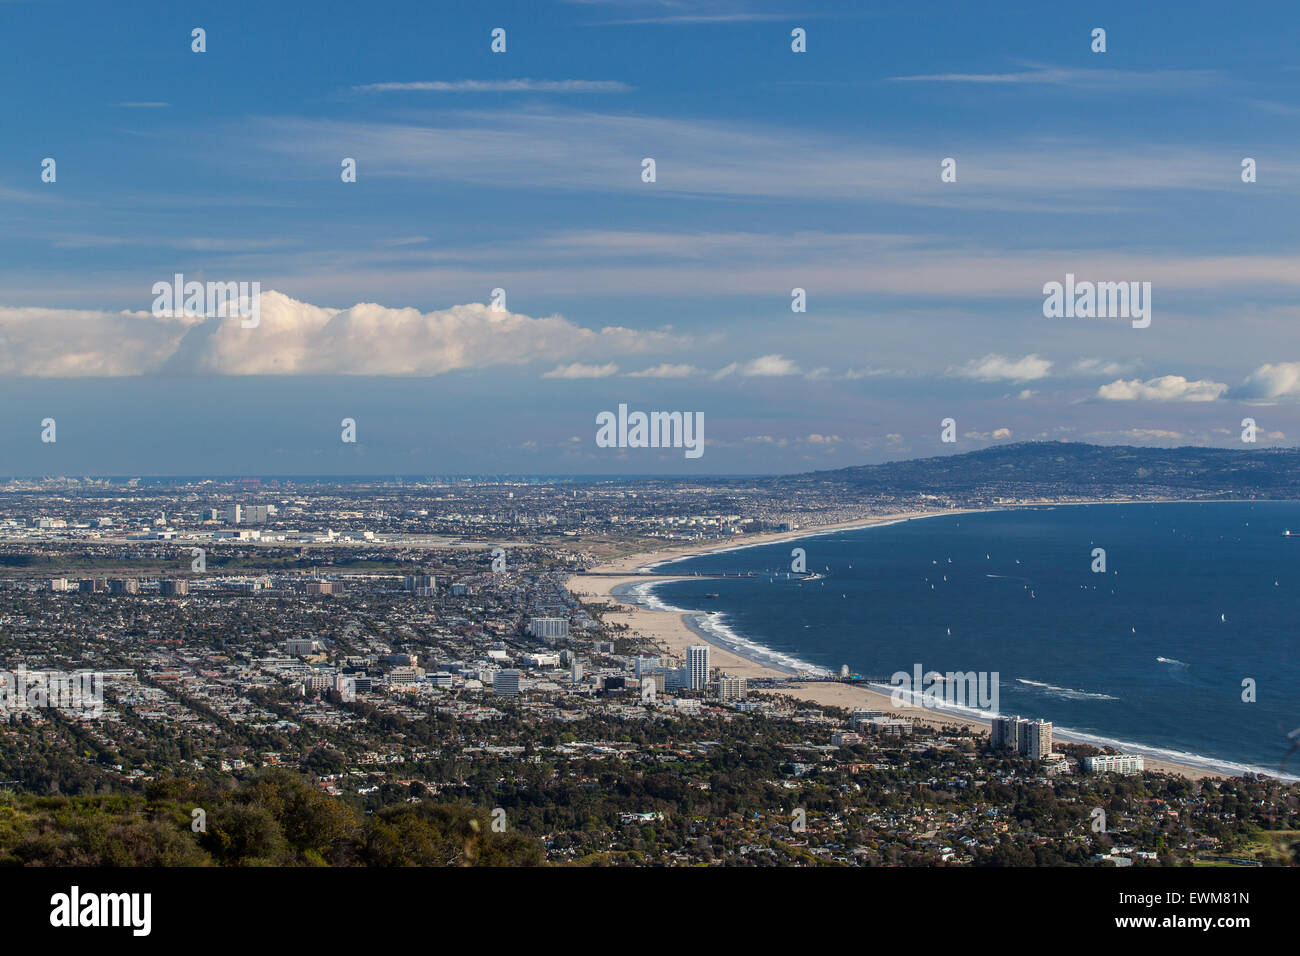 Una vista de la zona oeste de Los Angeles, Santa Monica y Venice Beach en frente de la Bahía de Santa Monica. Foto de stock